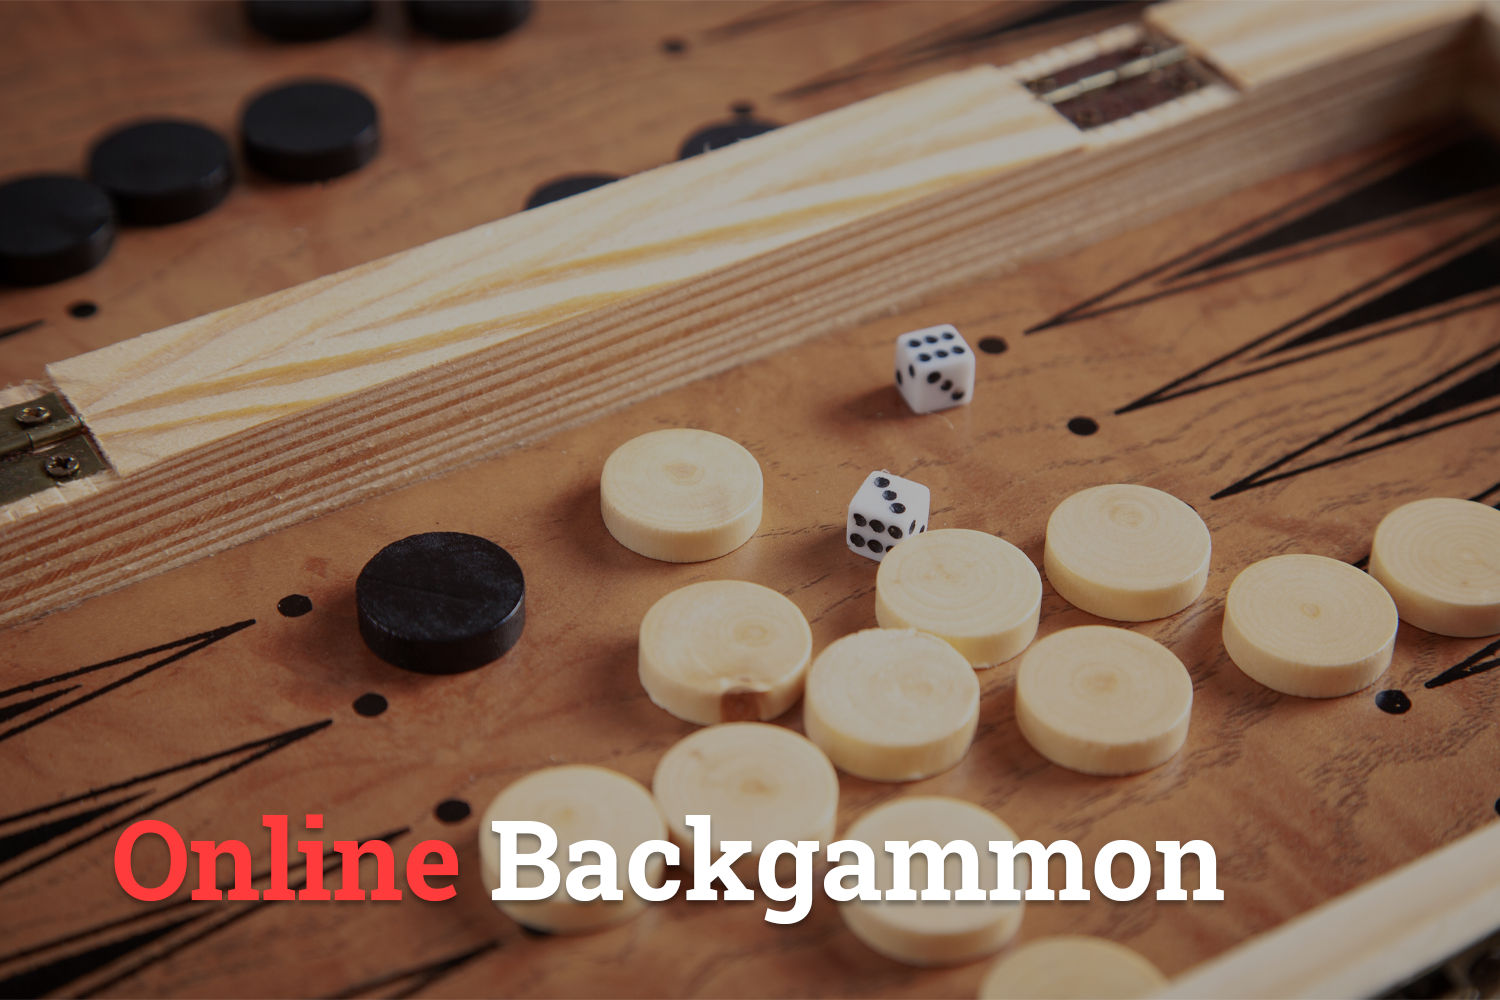 Backgammon ubktbultjg